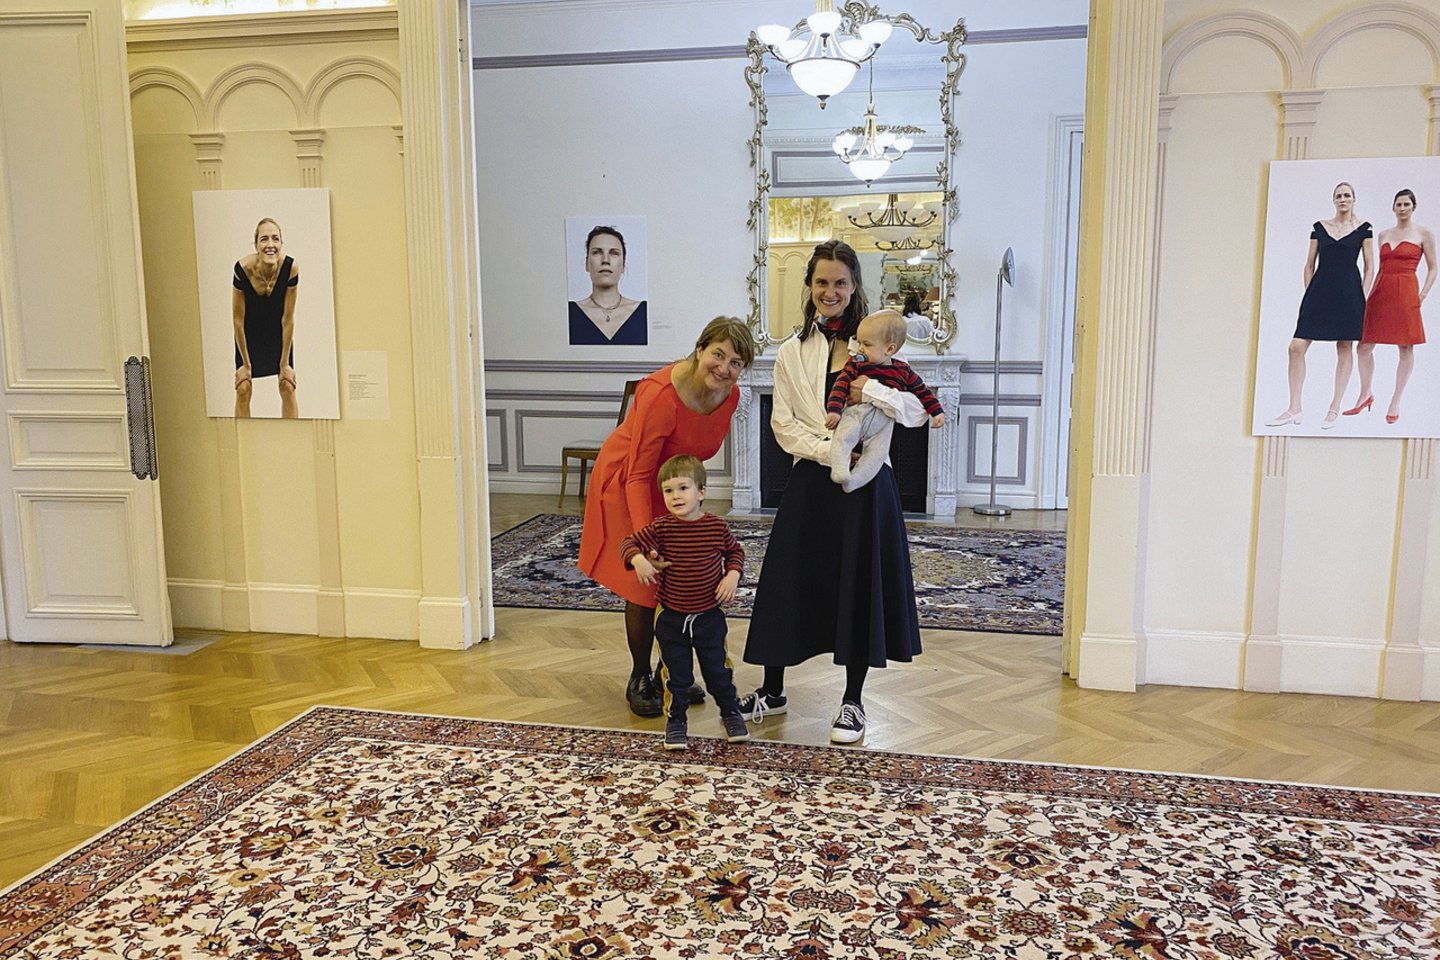 Eglės mama dizainerė ir konstruktorė Gražina Čekanavičienė bei sūnūs Marius ir Jonas – didžiausia palaikymo komanda.